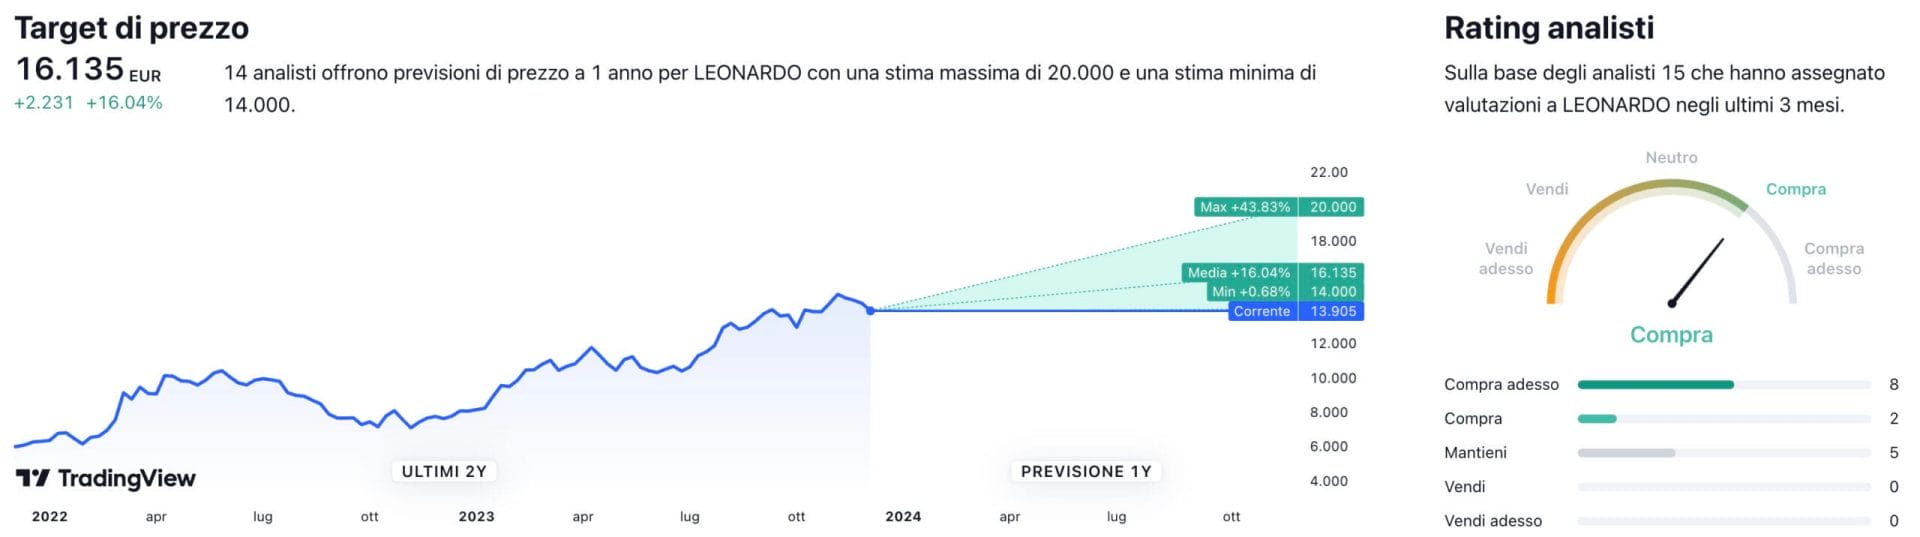 Target di prezzo a un anno e raccomandazioni degli analisti per il titolo Leonardo